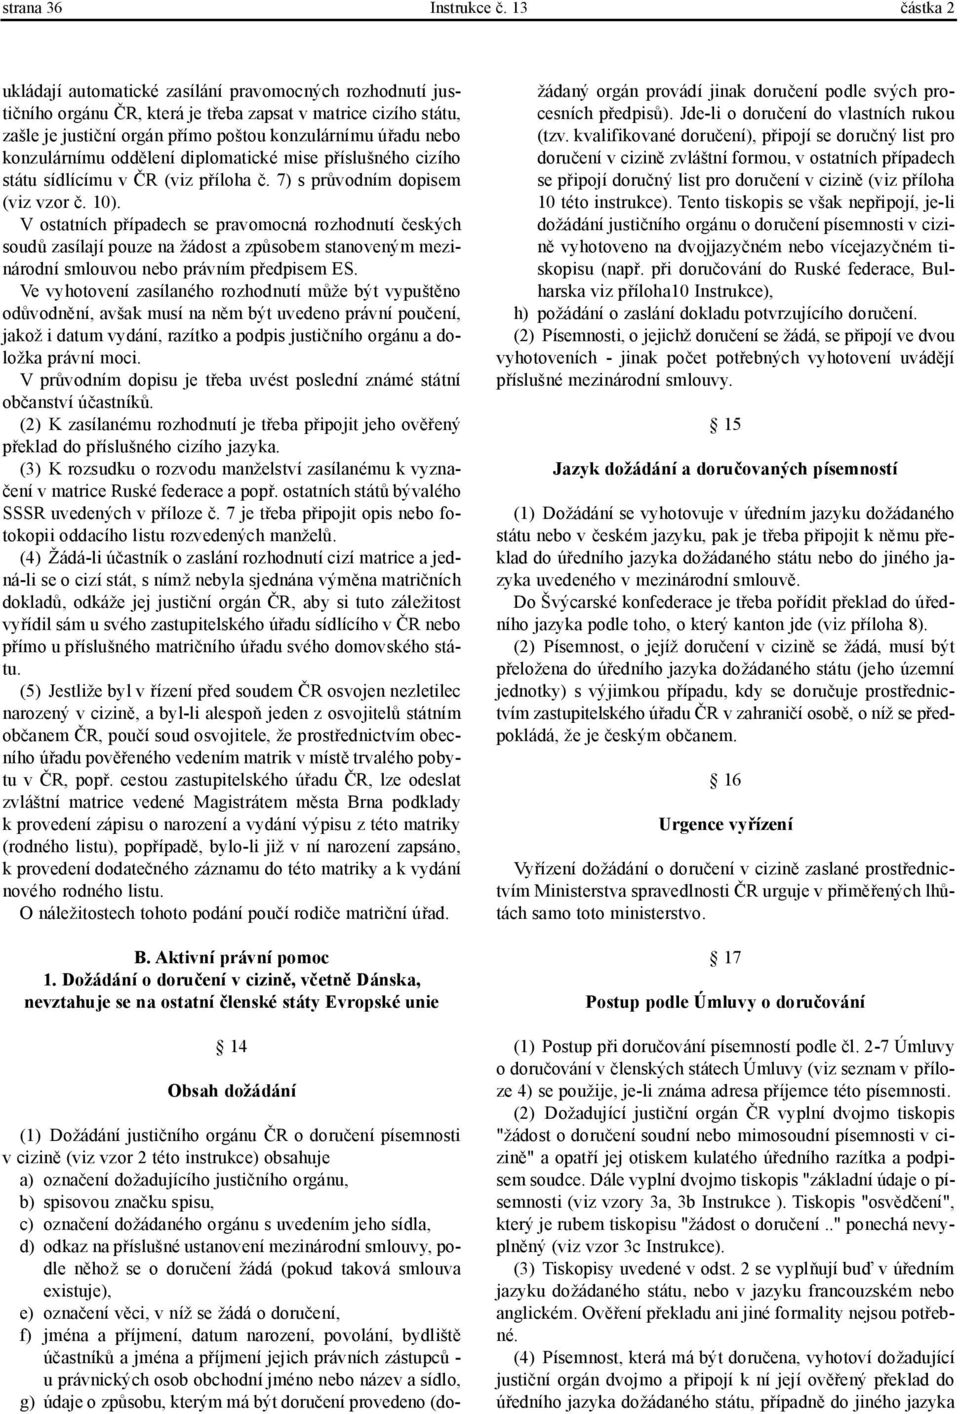 konzulárnímu oddělení diplomatické mise příslušného cizího státu sídlícímu v ČR (viz příloha č. 7) s průvodním dopisem (viz vzor č. 10).